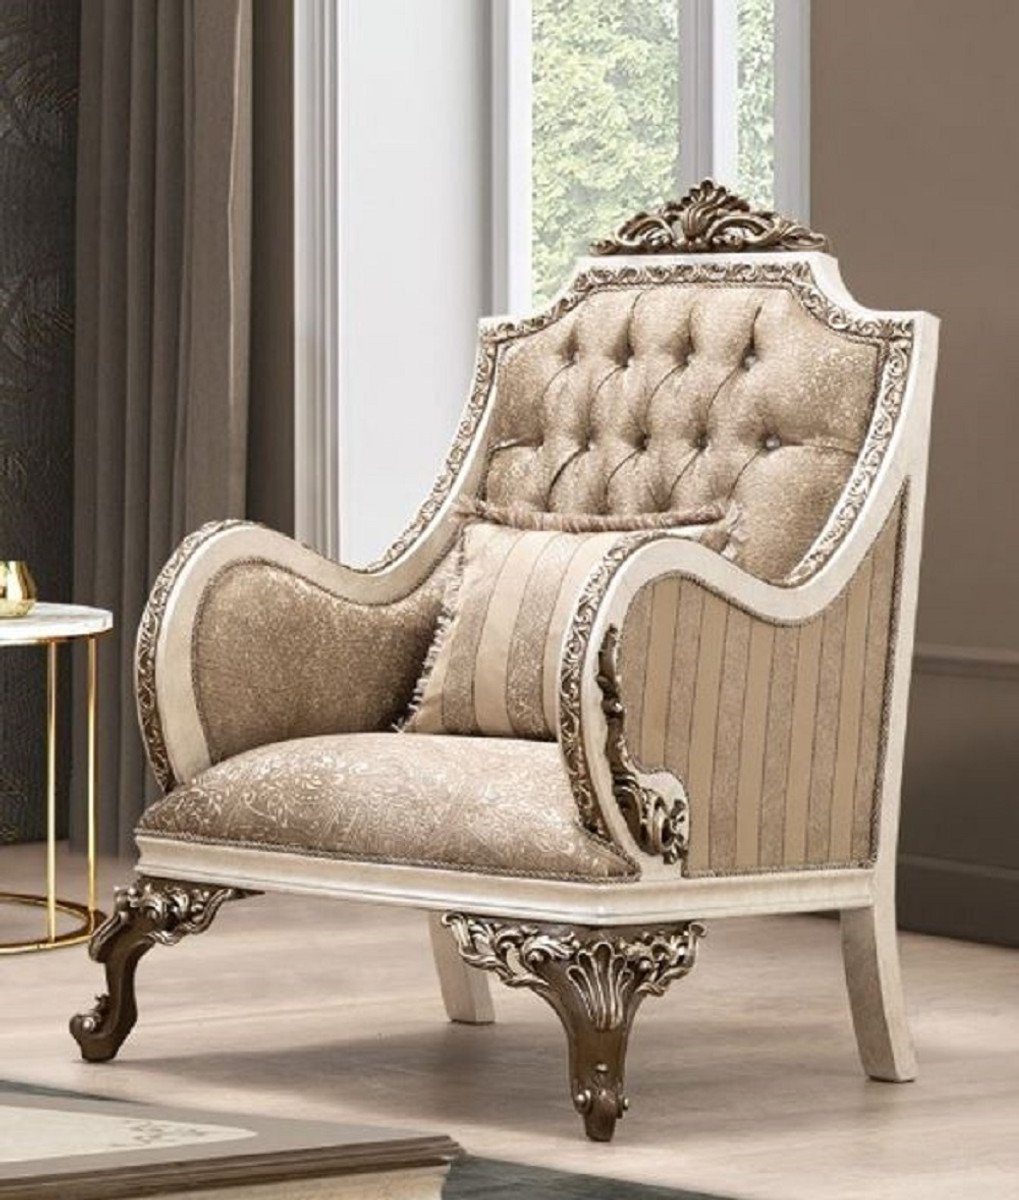 Casa Padrino Sessel Luxus Barock Sessel Beige / Cremefarben / Braun / Gold - Prunkvoller Wohnzimmer Sessel mit elegantem Muster - Barock Wohnzimmer Möbel | Einzelsessel